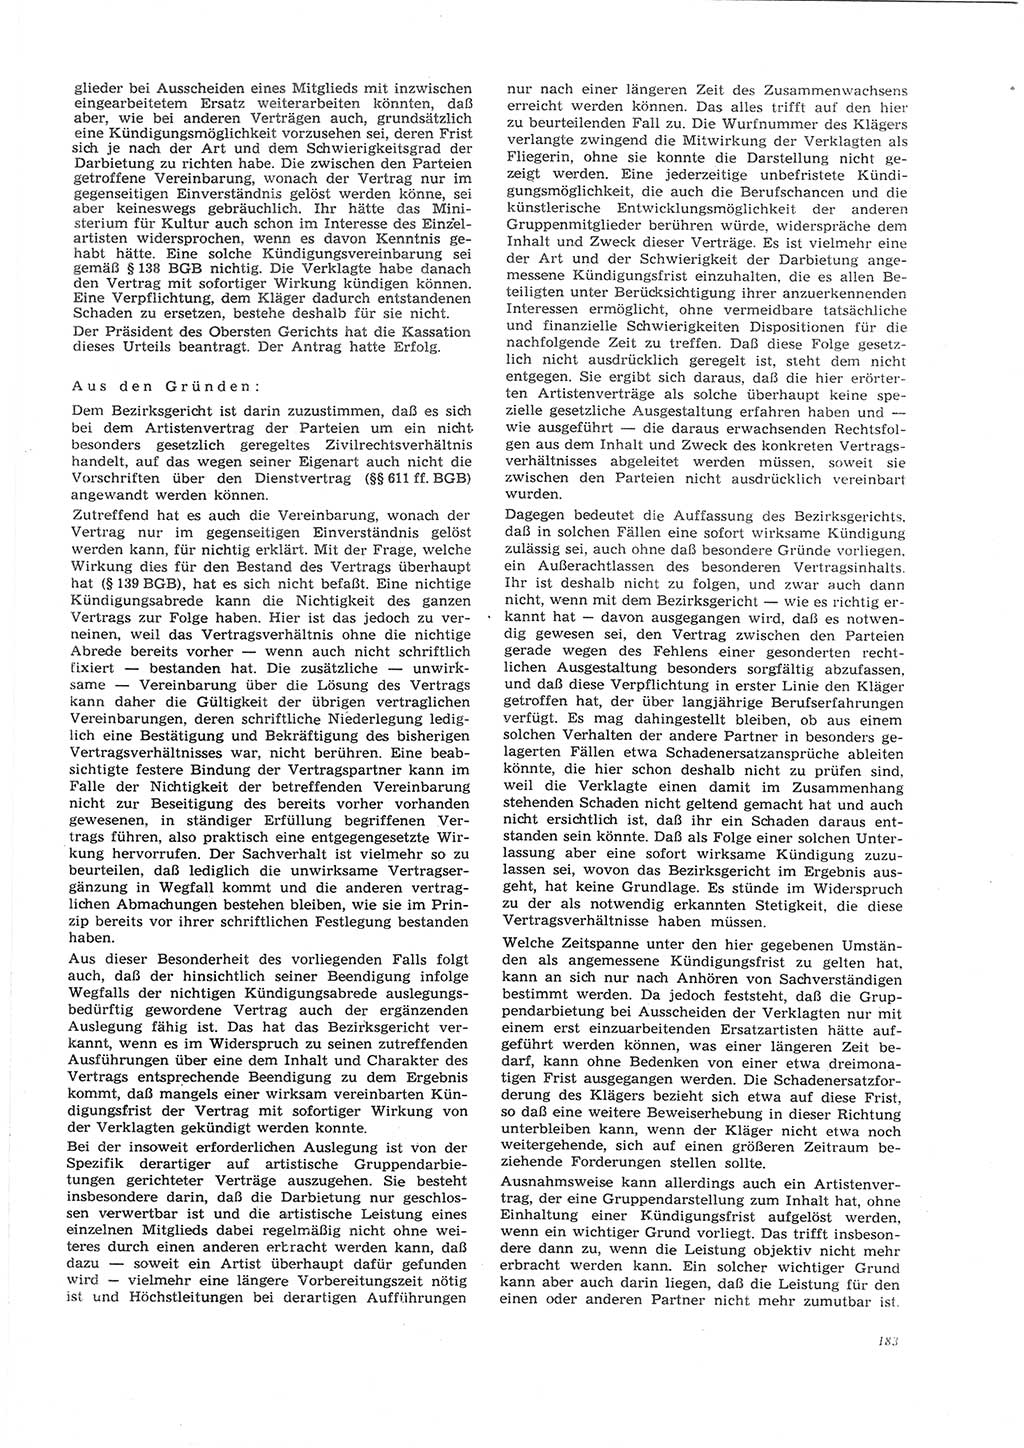 Neue Justiz (NJ), Zeitschrift für Recht und Rechtswissenschaft [Deutsche Demokratische Republik (DDR)], 26. Jahrgang 1972, Seite 183 (NJ DDR 1972, S. 183)